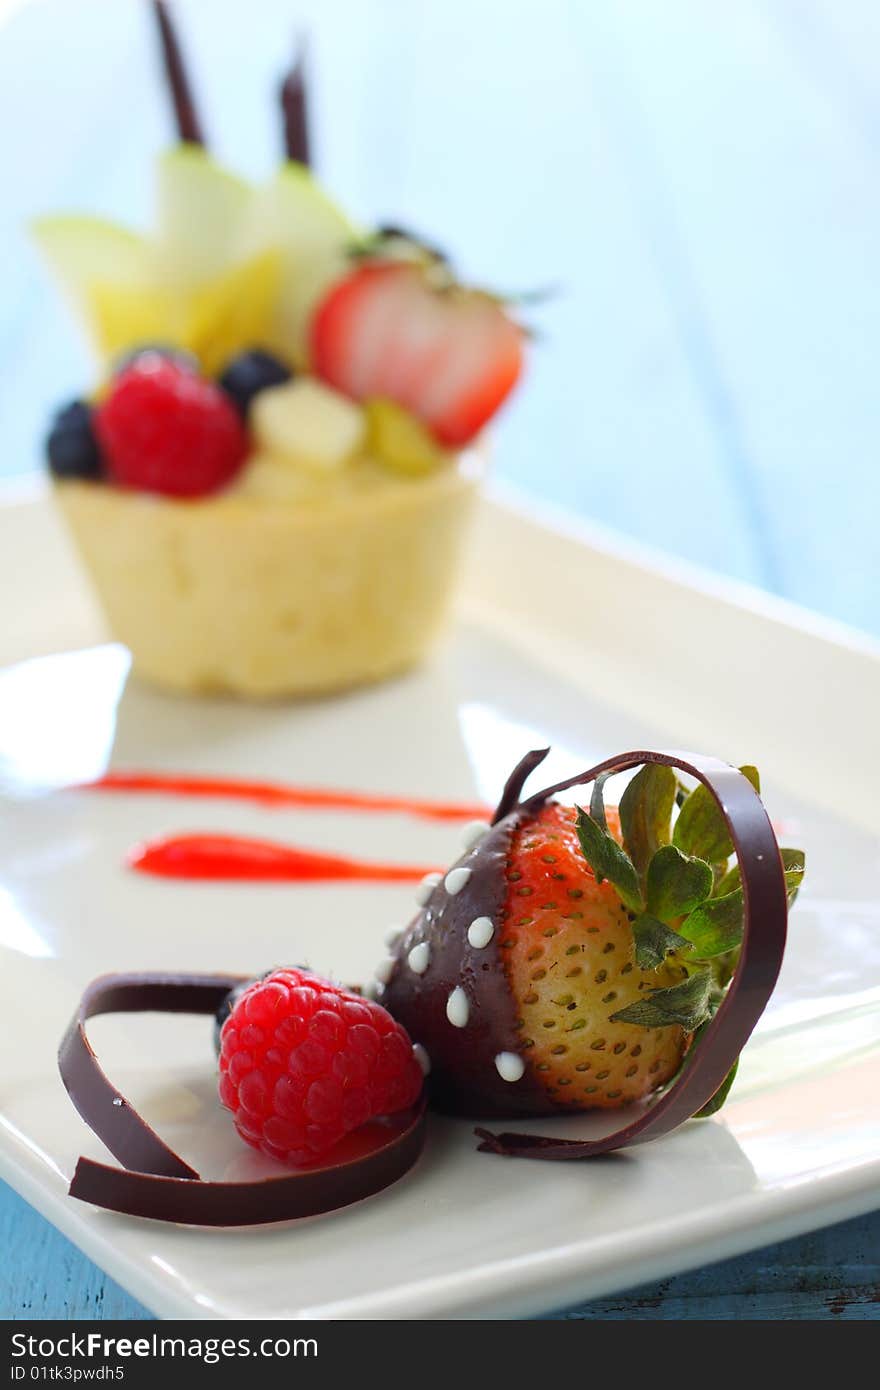 Chocolate coating strawberry and fruit tart.